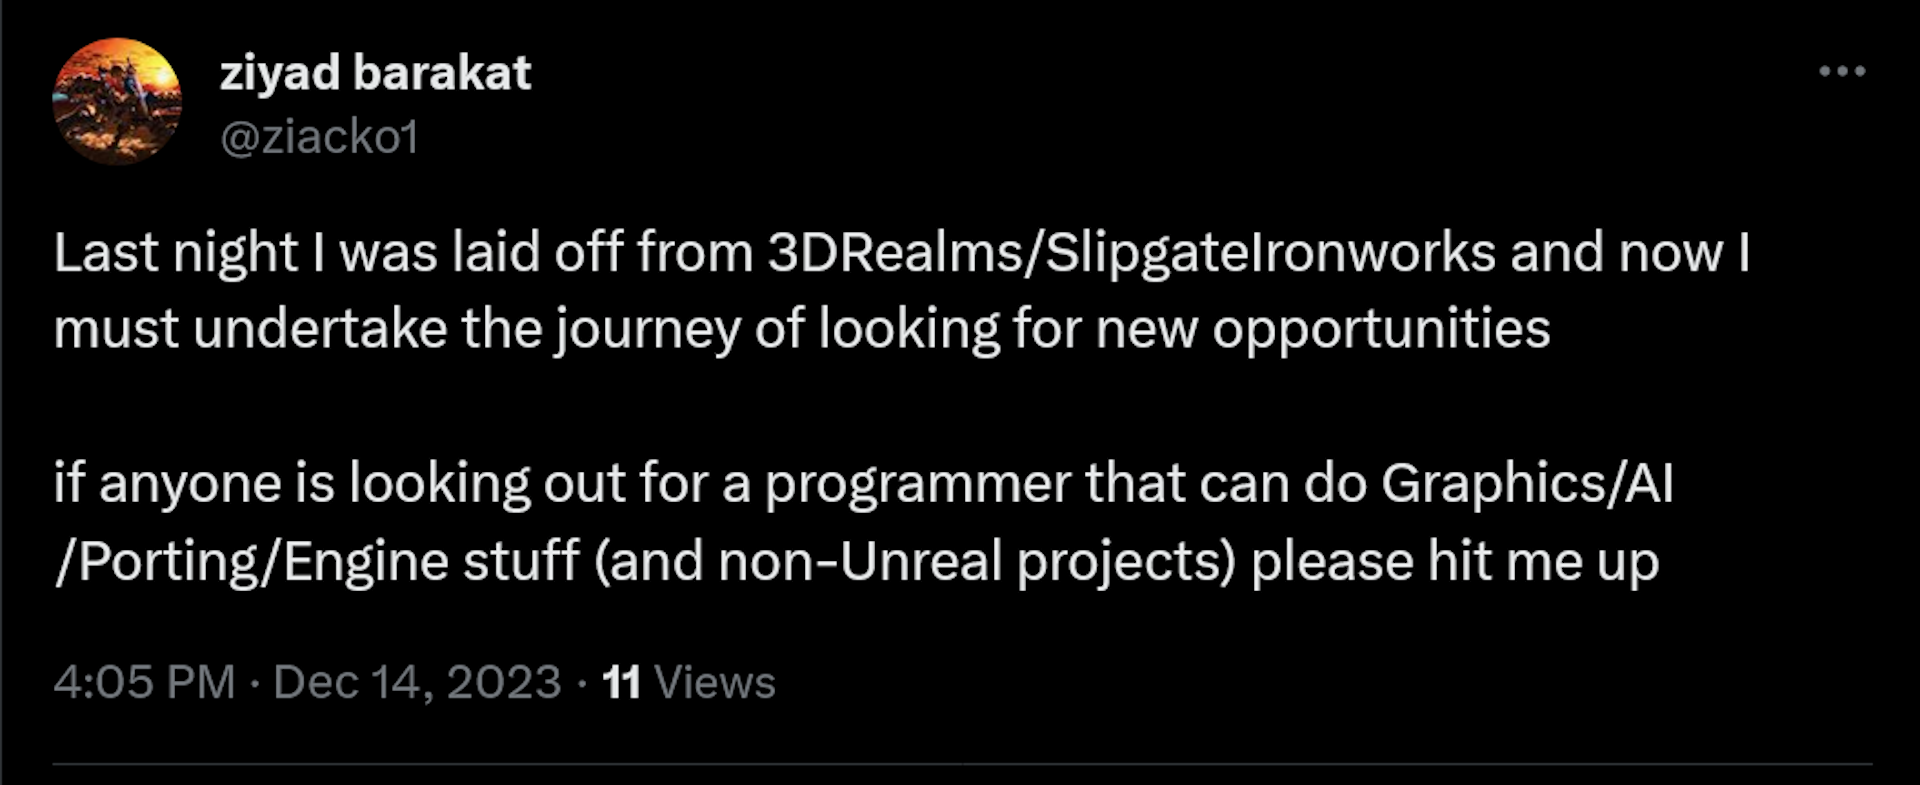 Gestern Abend wurde ich von 3DRealms/SlipgateIronworks entlassen und jetzt muss ich mich auf die Suche nach neuen Möglichkeiten machen. Wenn jemand nach einem Programmierer sucht, der sich mit Grafik-/KI-/Portierungs-/Engine-Sachen (und Nicht-Unreal-Projekten) auskennt, klicken Sie bitte mich auf